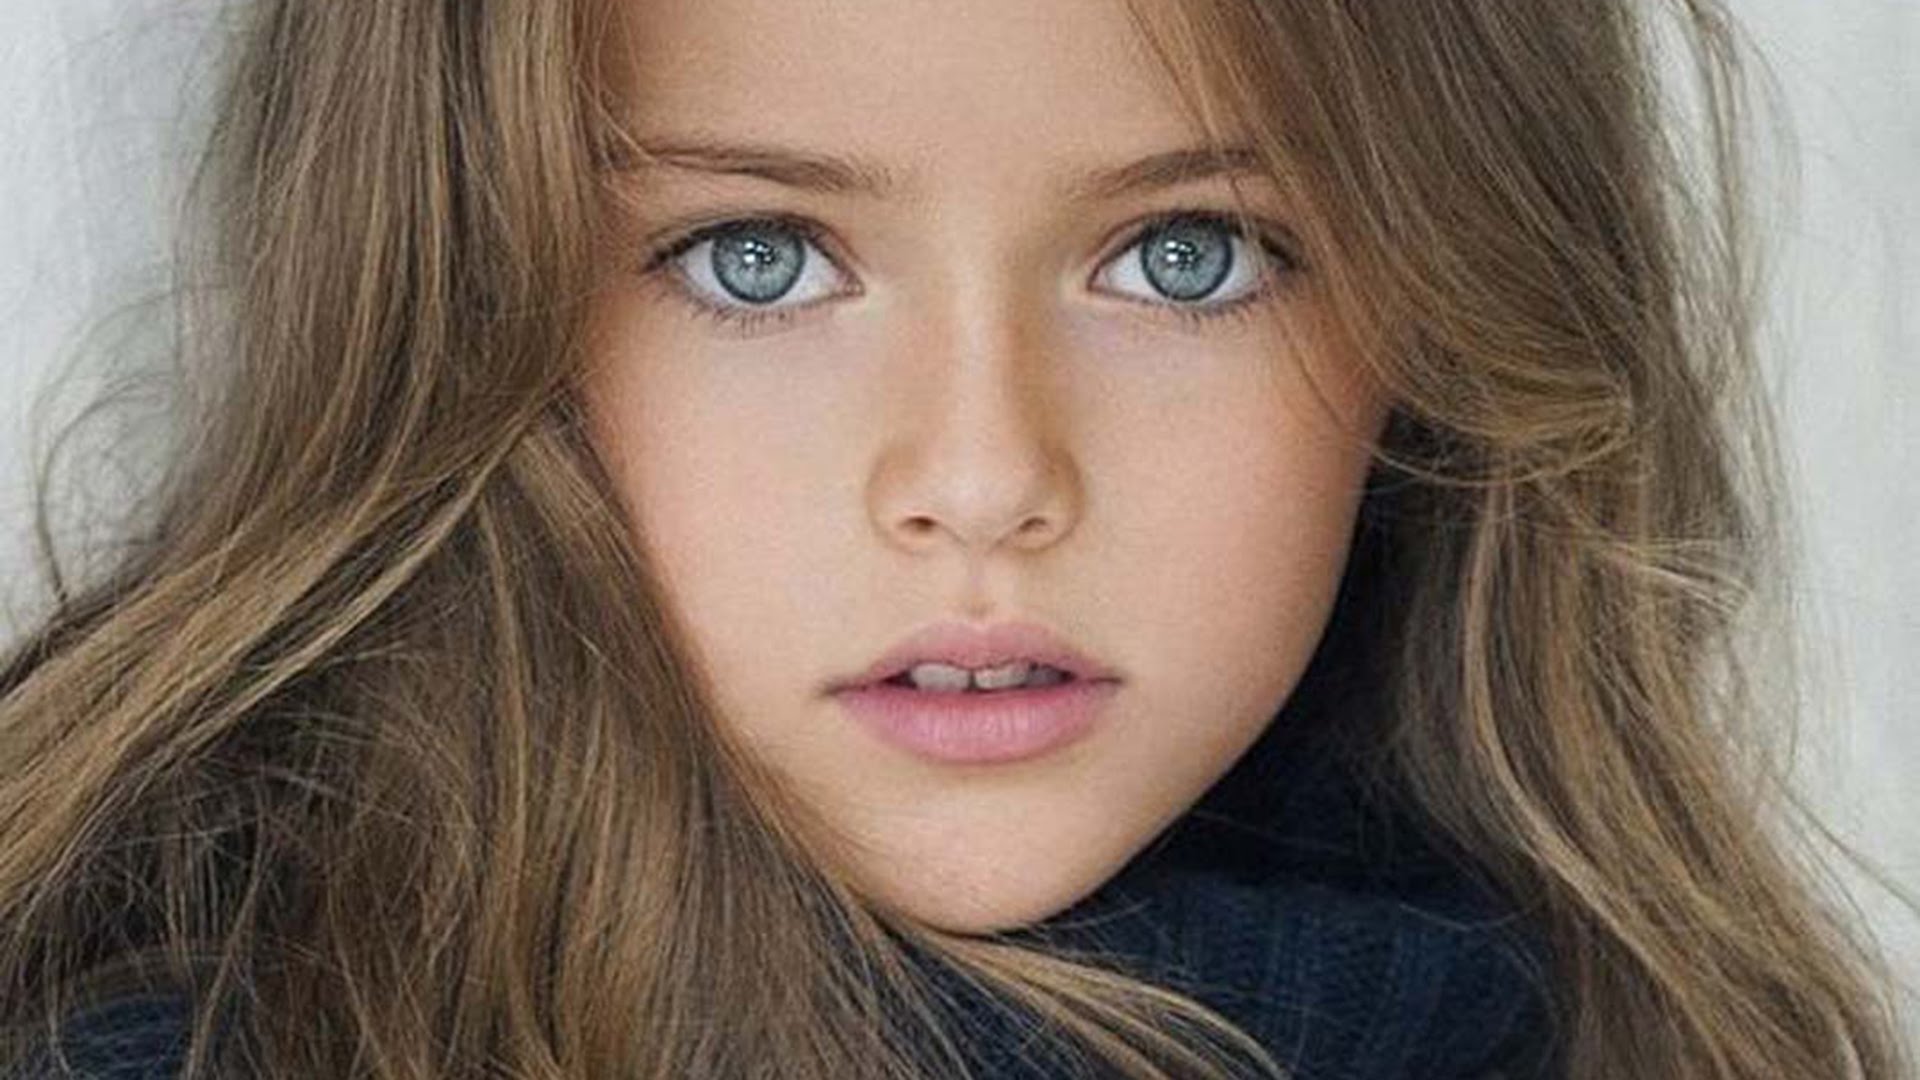 10-letnia modelka podpisała kontrakt z agencją modelek. Zbyt młoda?